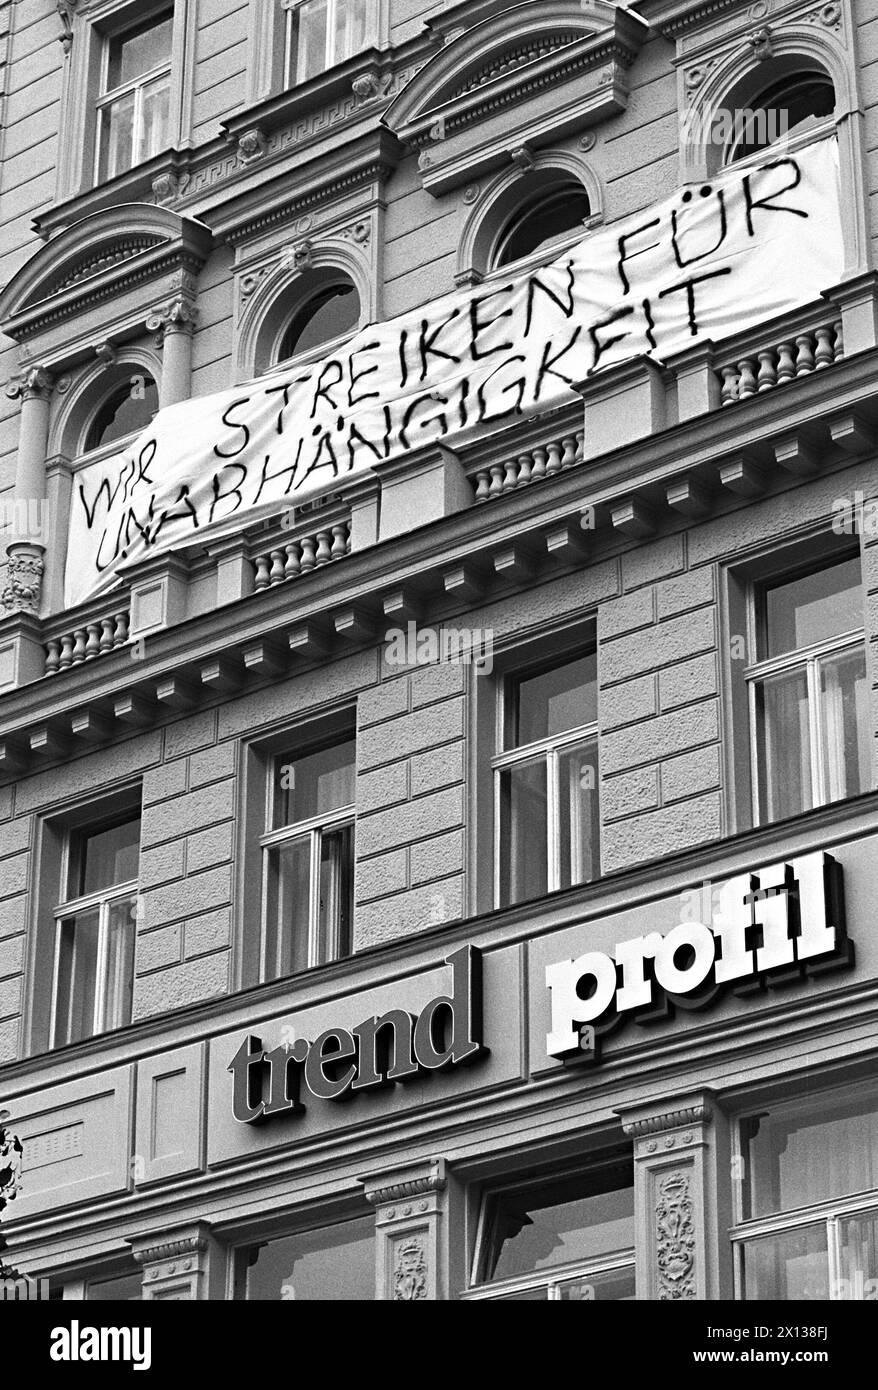 Vienna il 27 settembre 1991: Streik indefinito sulle riviste austriache "trend" e "profil" per una maggiore indipendenza (come scritto sulla facciata trasparente). - 19910927 PD0004 - Rechteinfo: Diritti gestiti (RM) Foto Stock